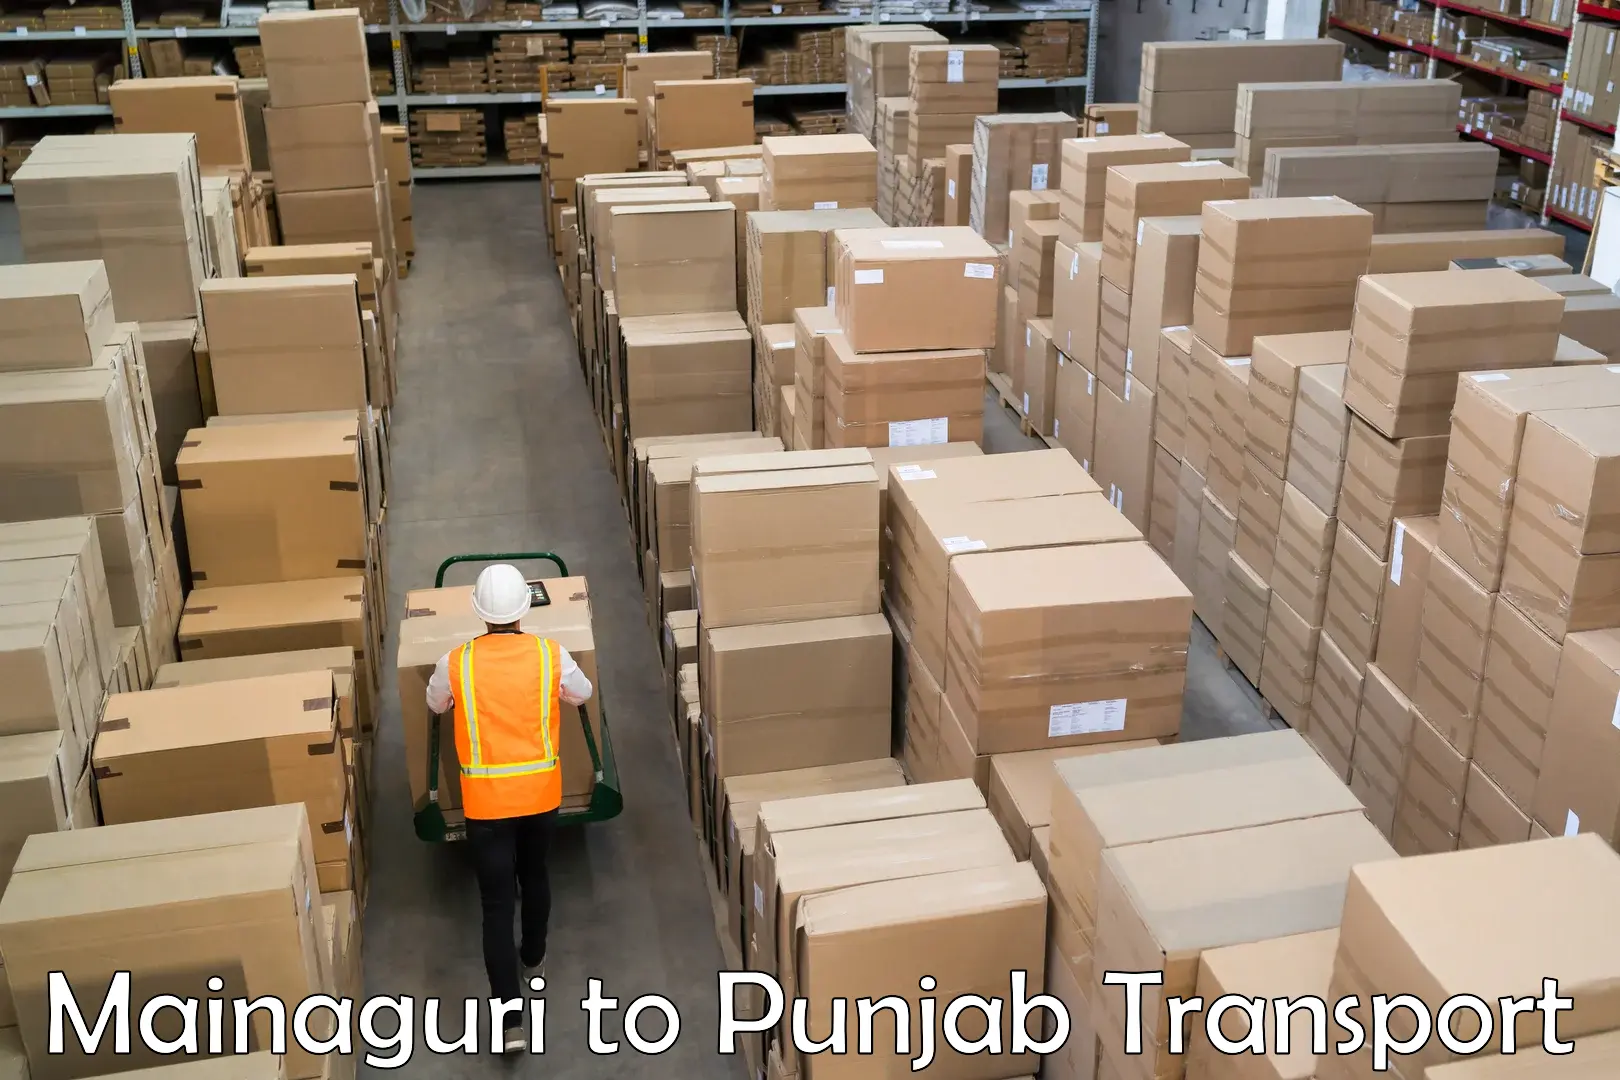 Air cargo transport services Mainaguri to Punjab